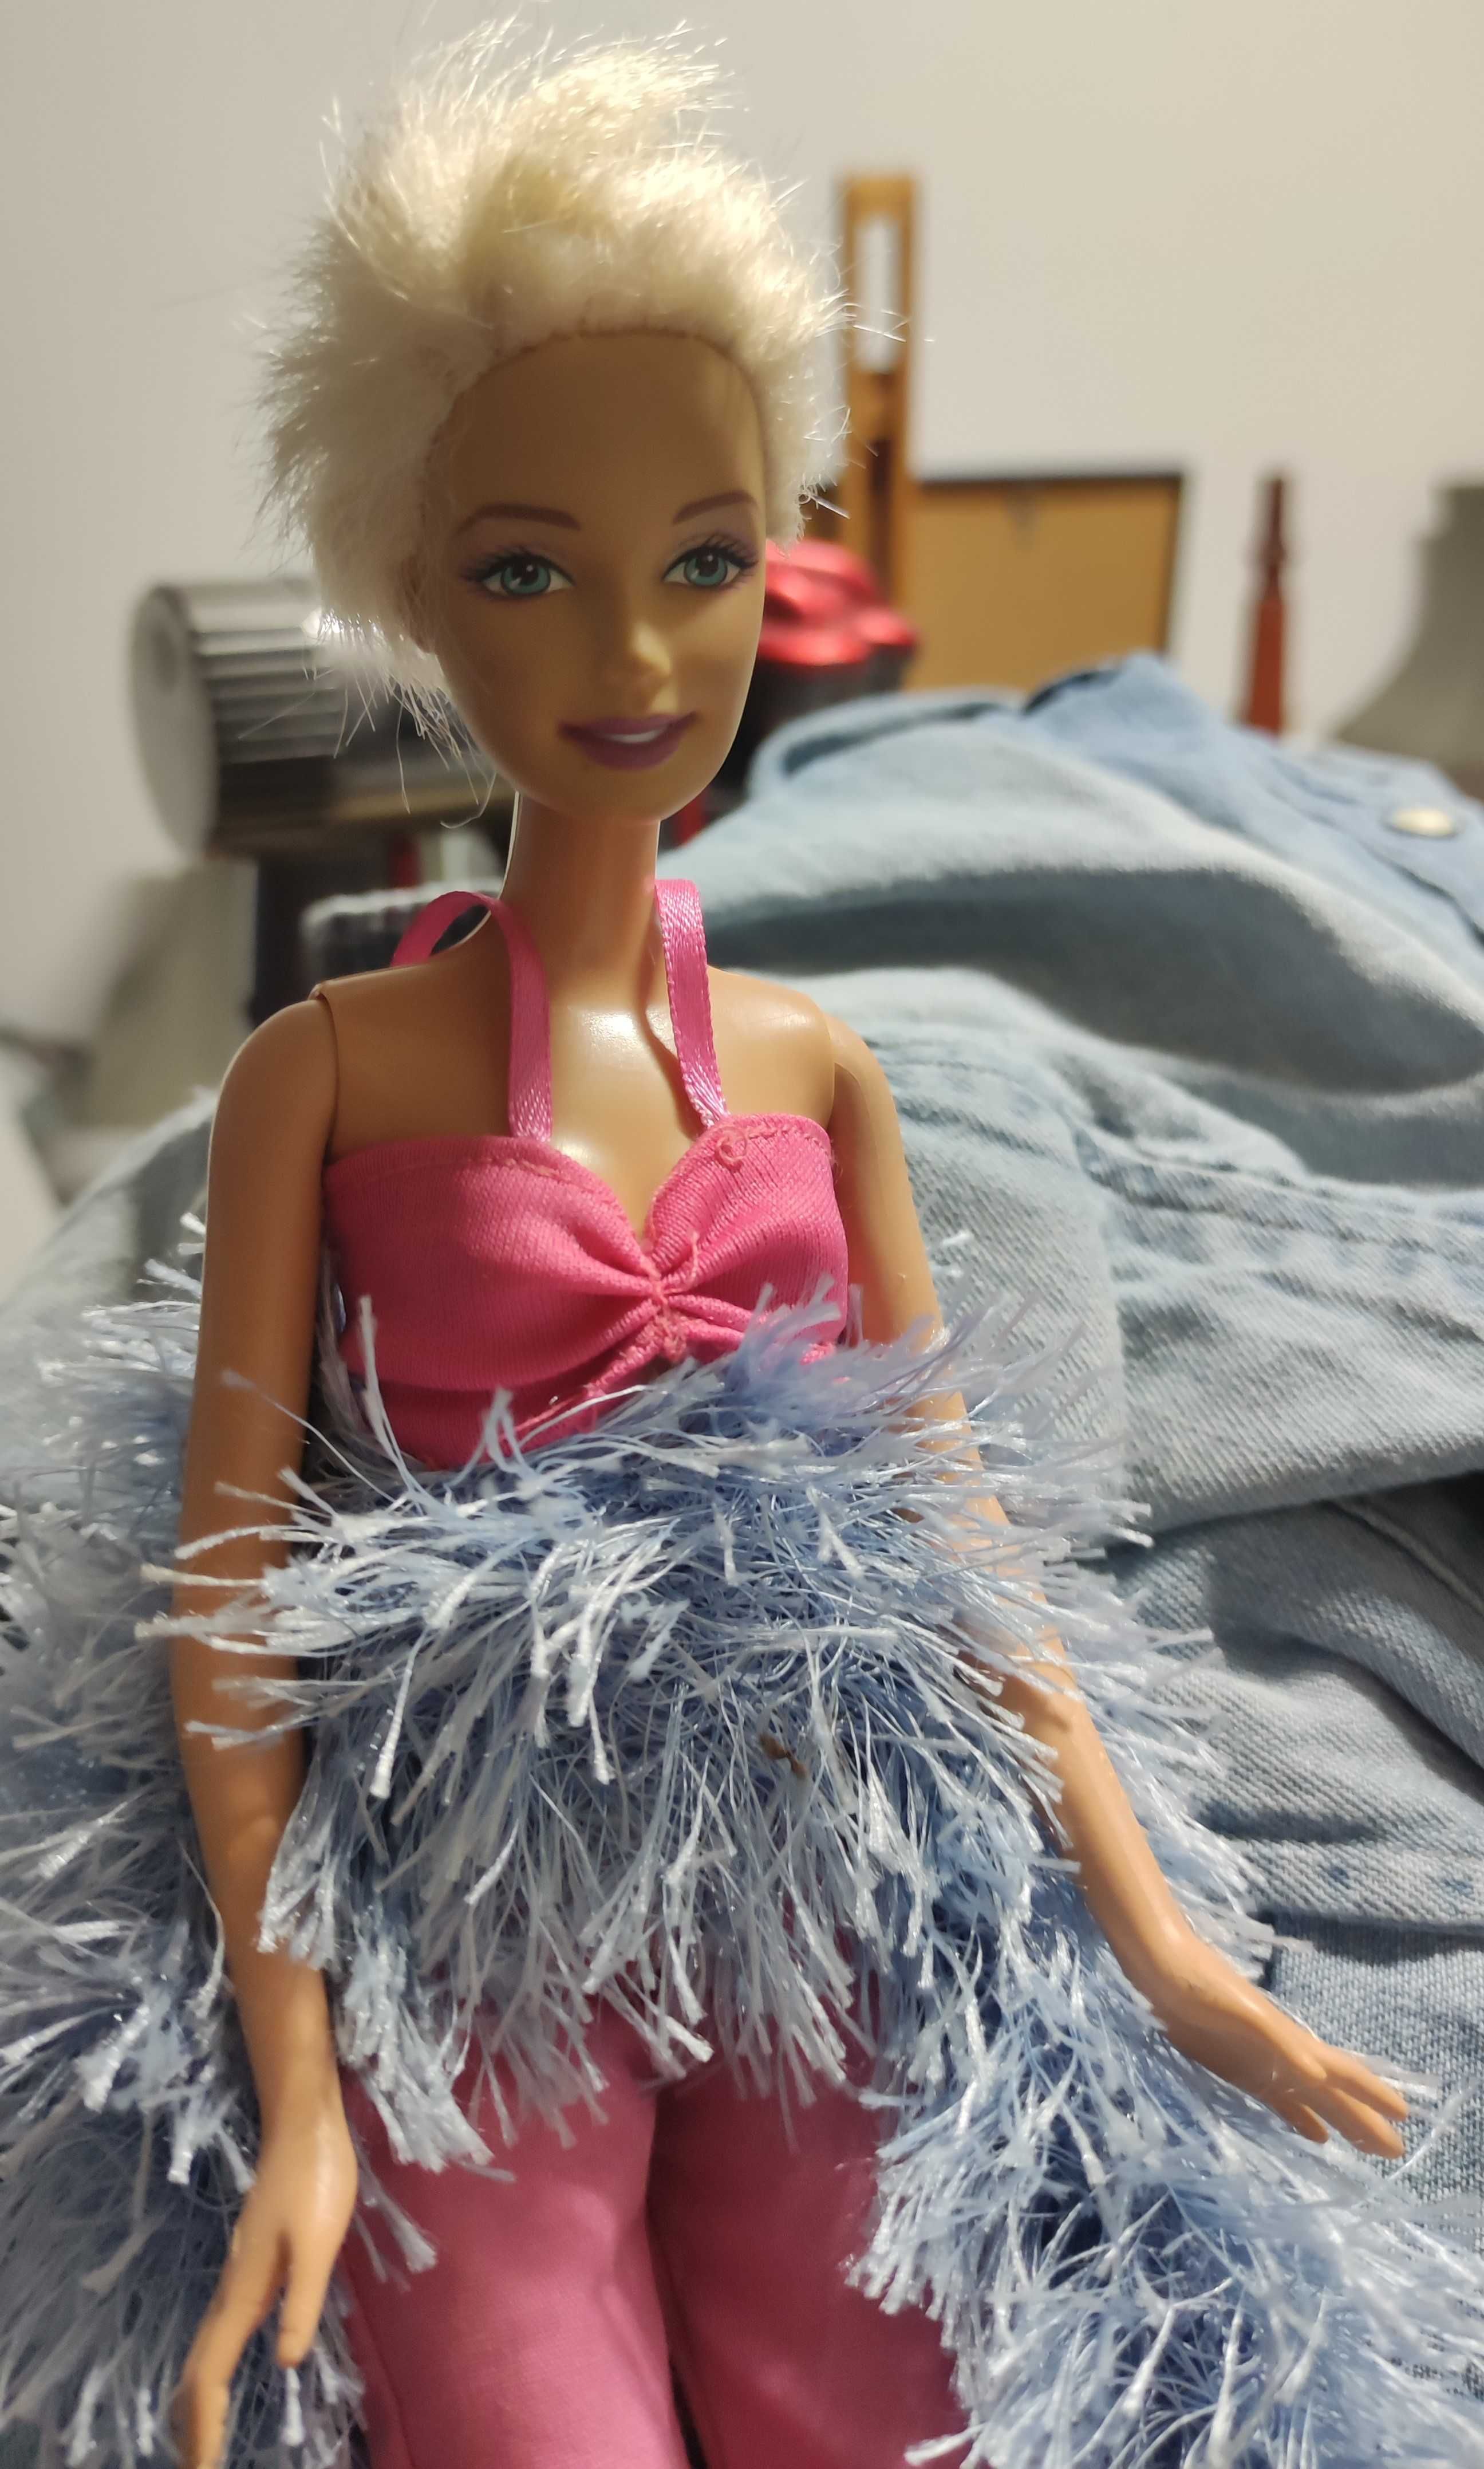 Zestaw lalek Barbie i Ken około 35-40 szt